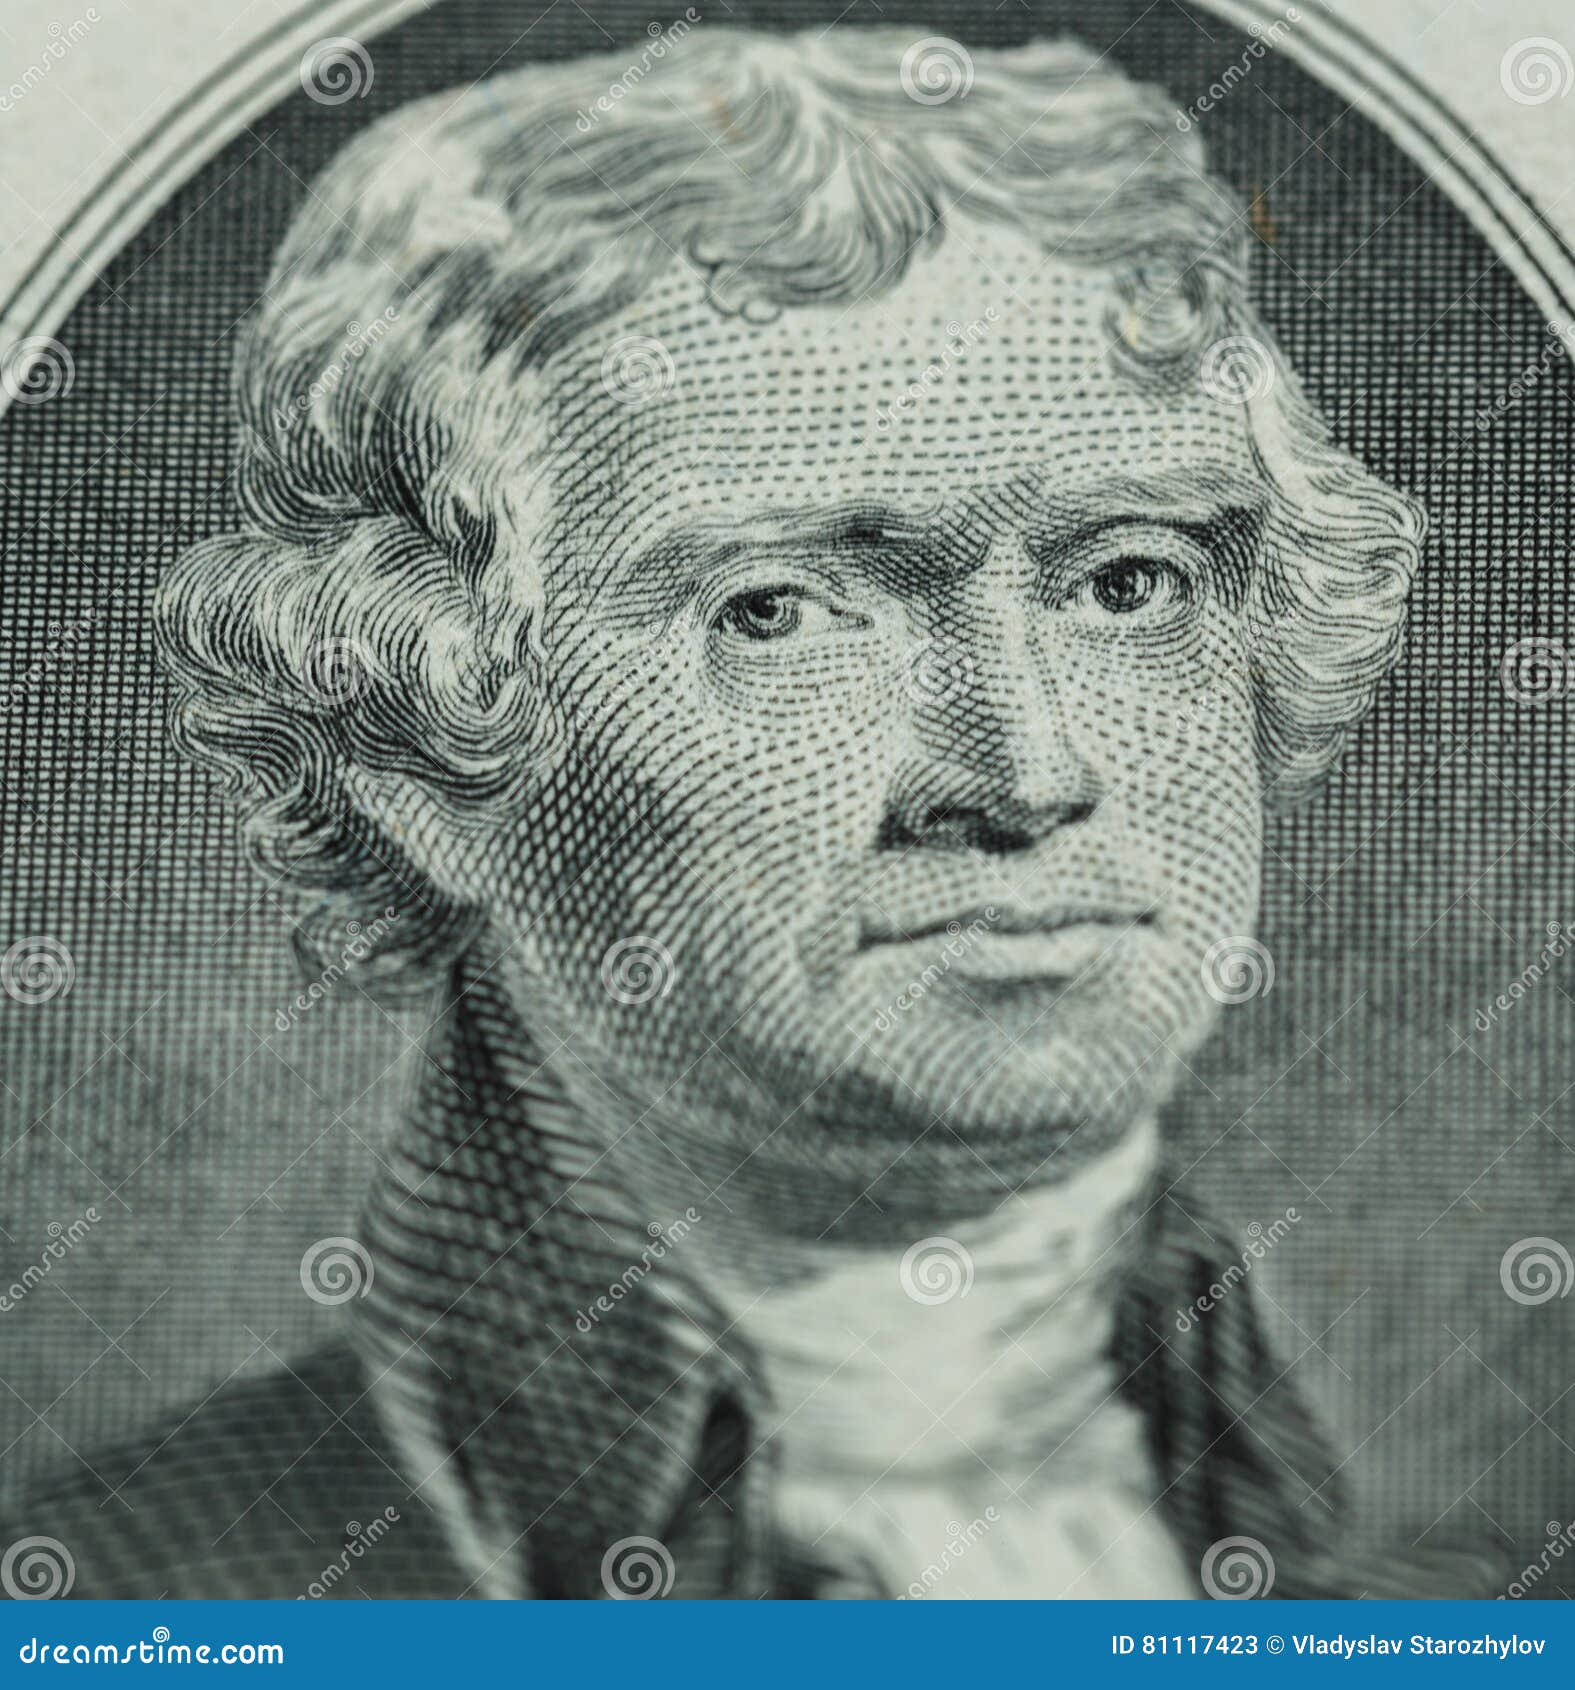 Джефферсон купюра. Доллар портреты президентов.